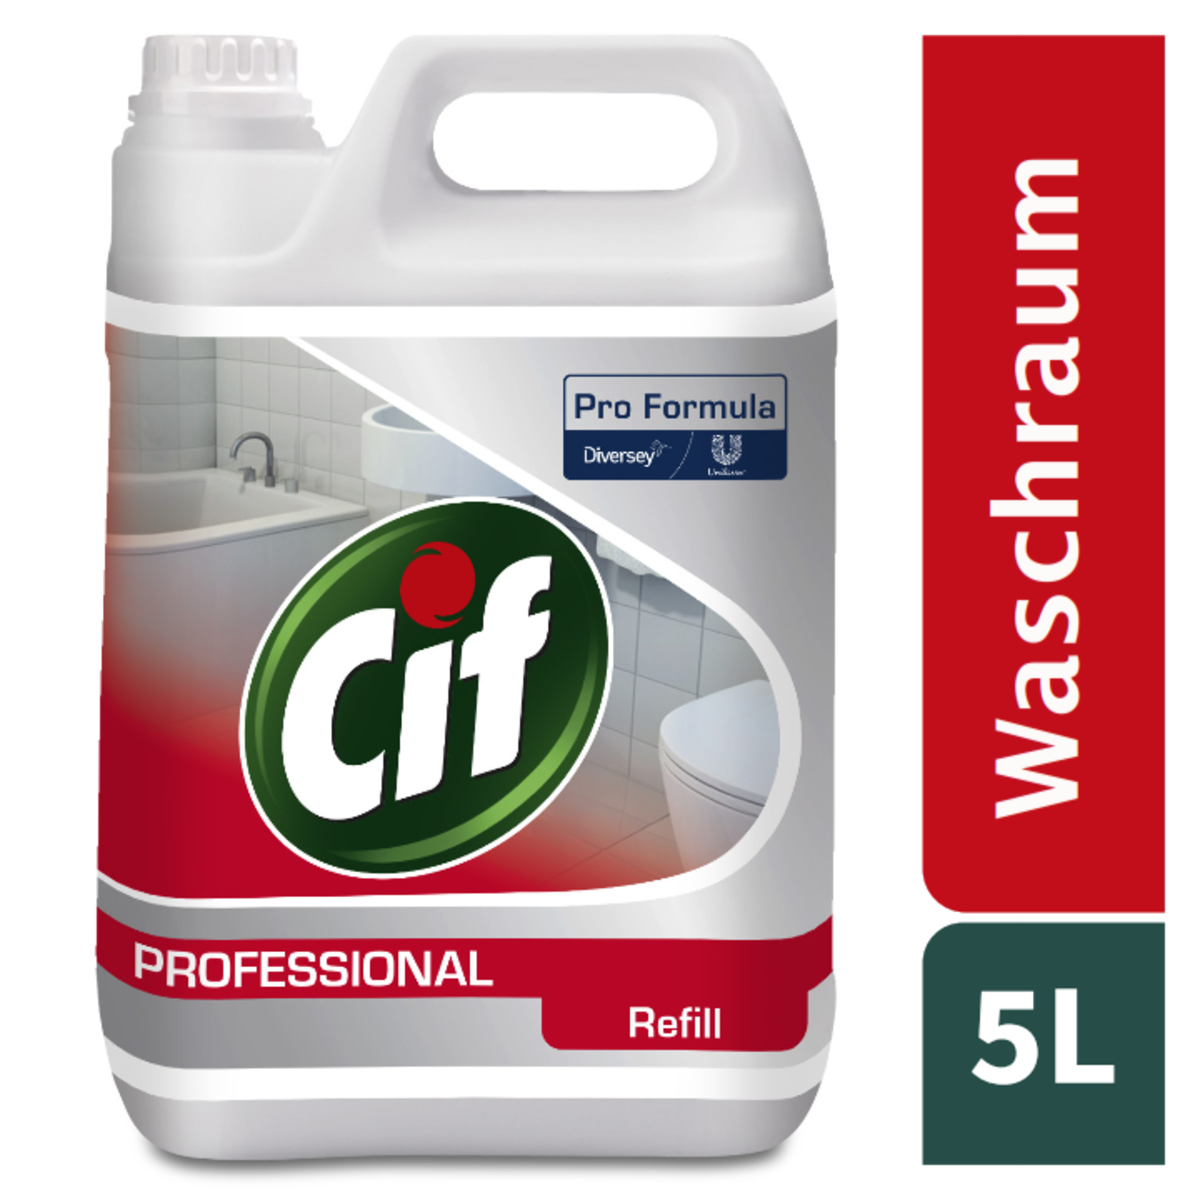 Cif Pro Formula Bagno 2x5L - Detergente e disincrostante combinato per bagni